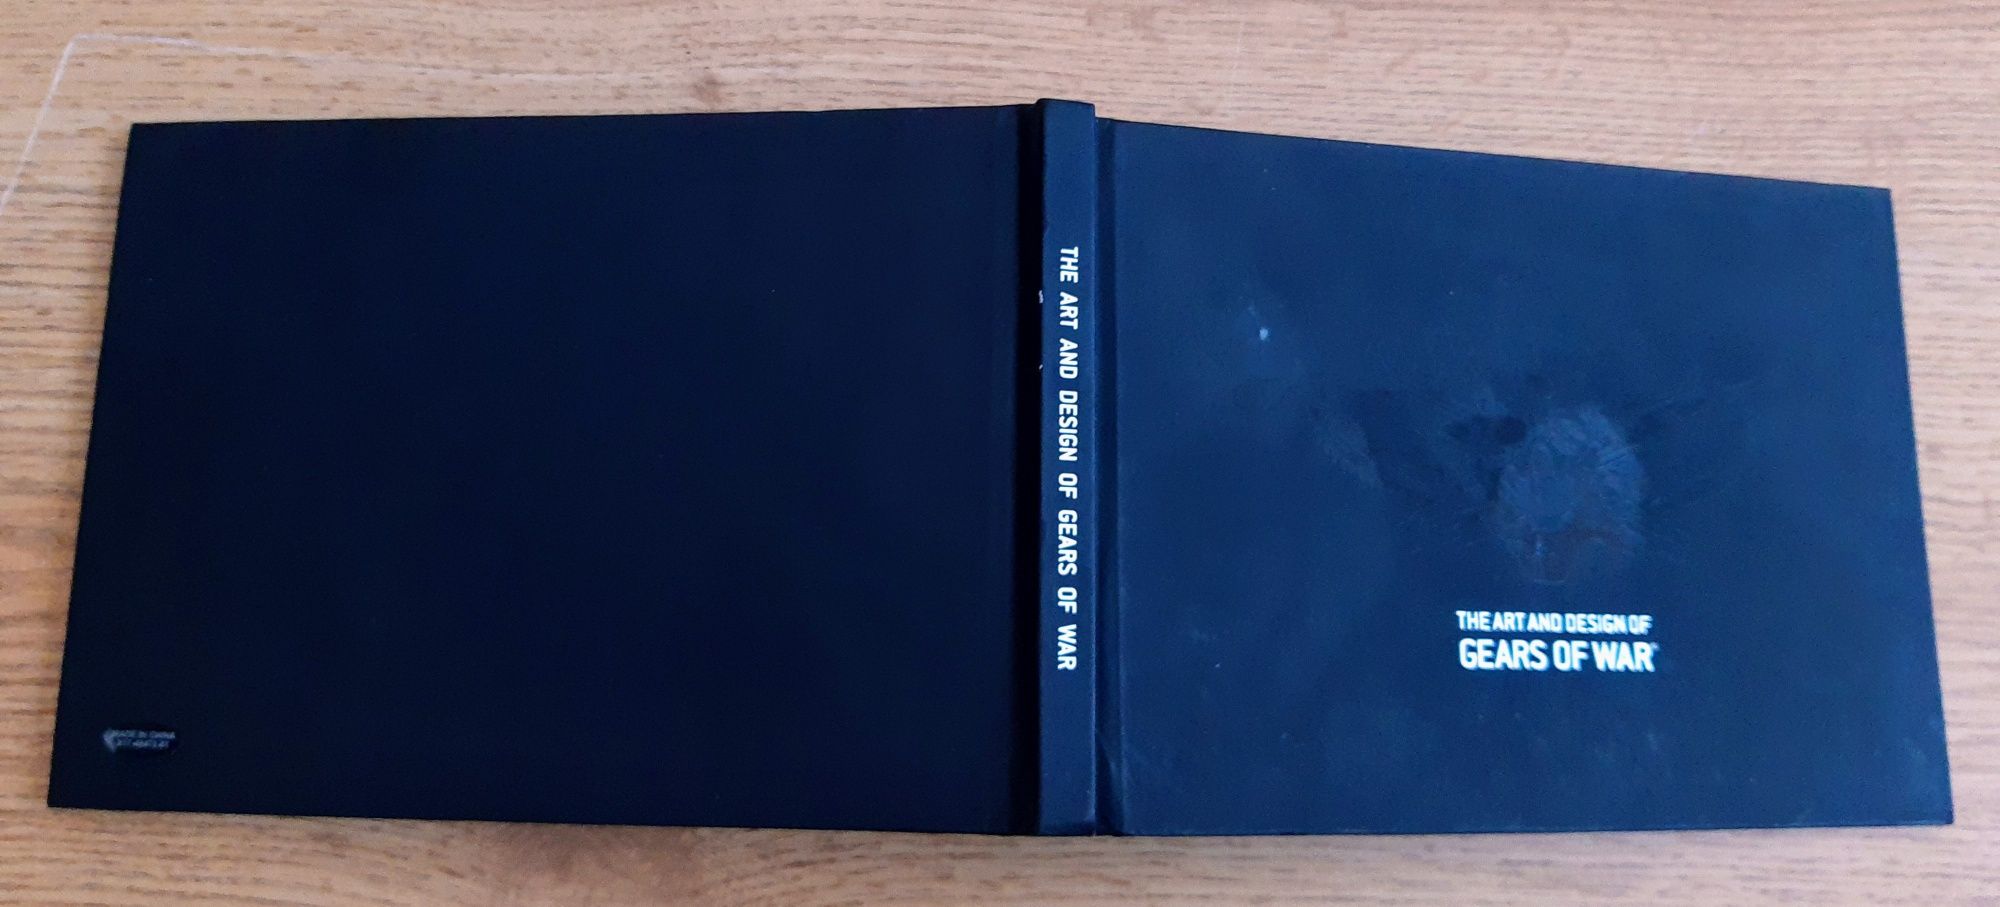 Gears od War artbook kolekcjonerski Xbox One 360 Series X PC.